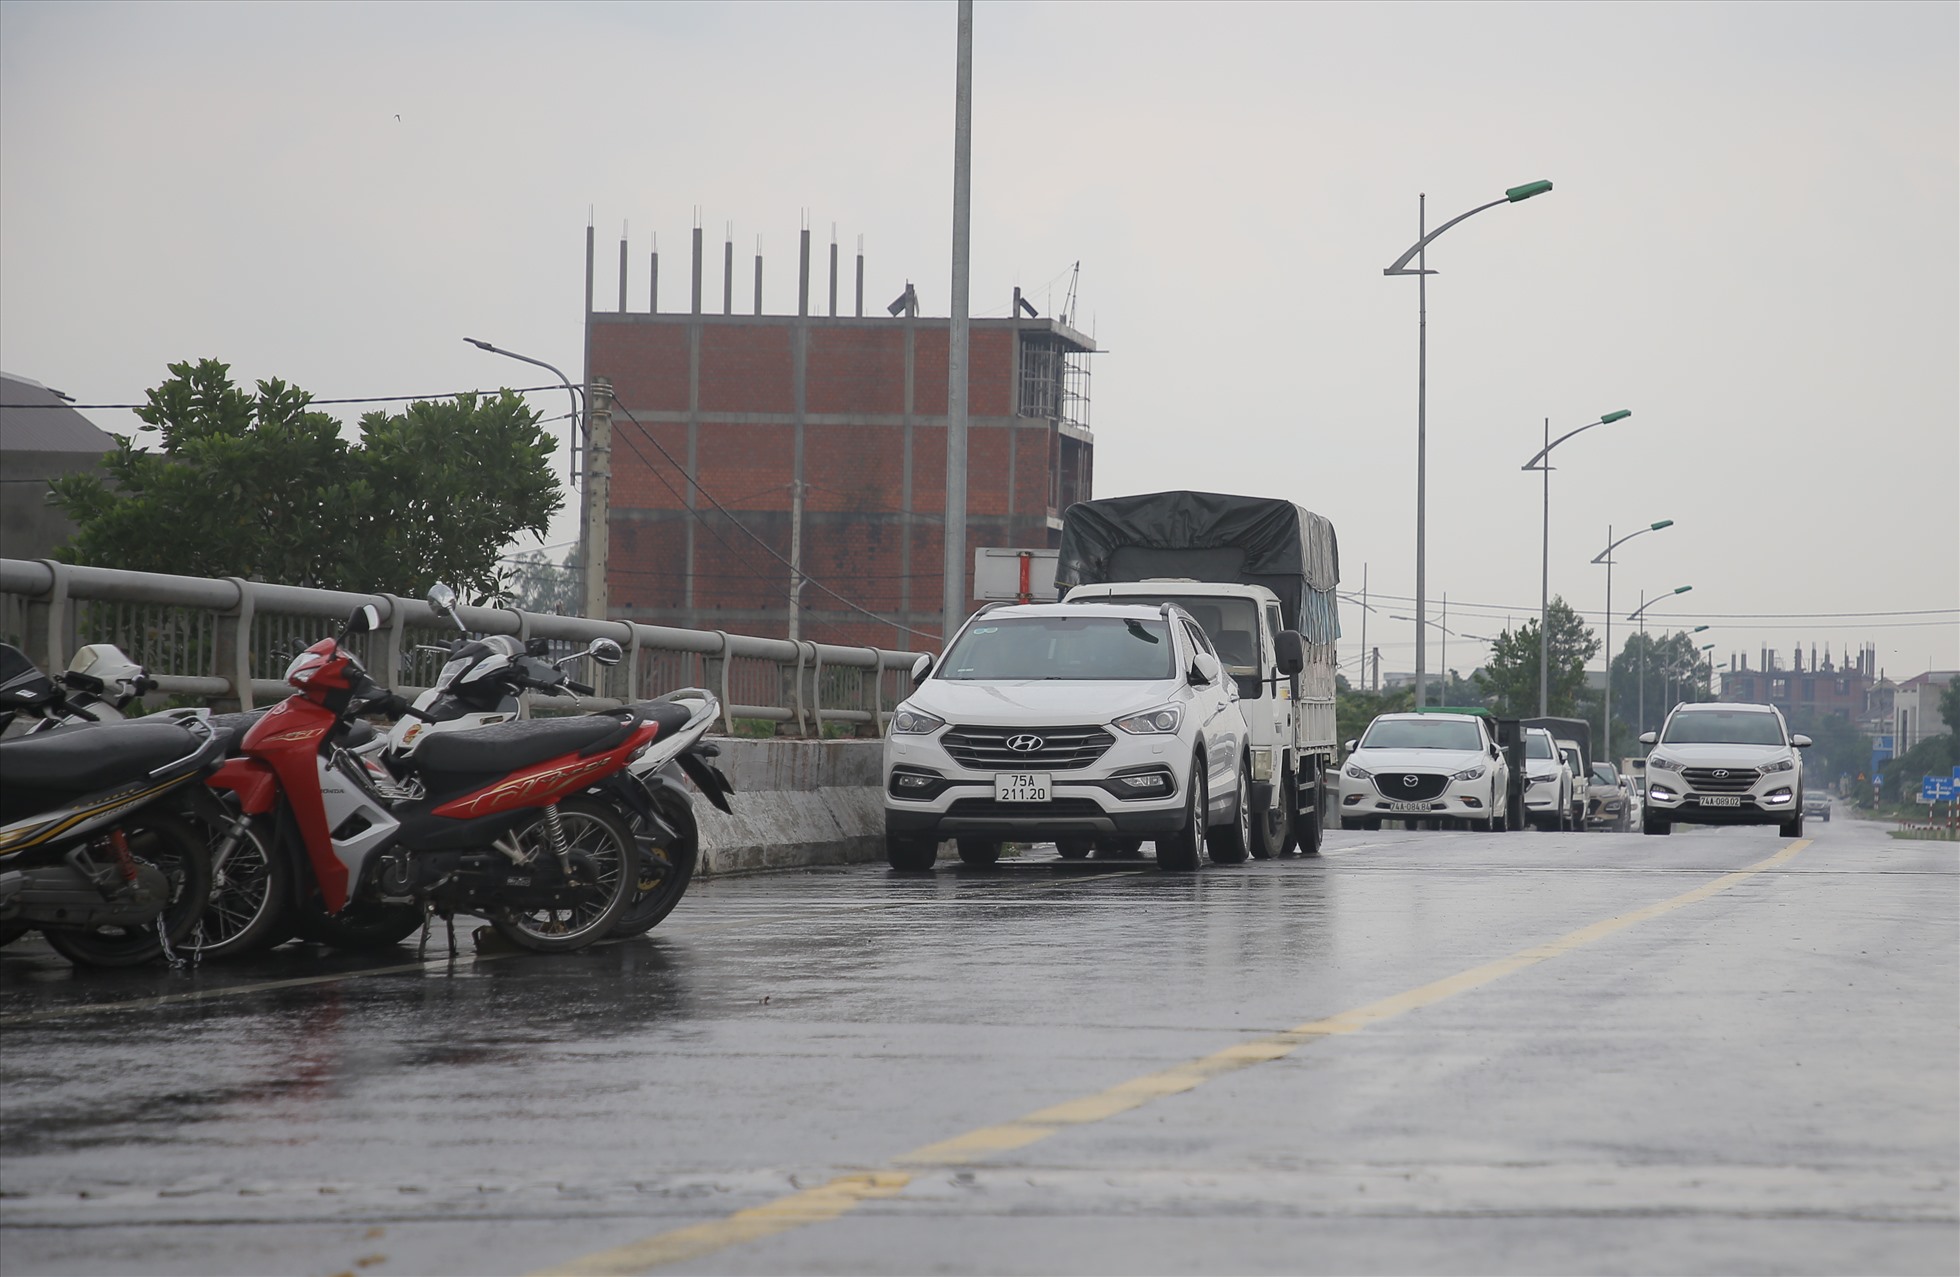 Hết mưa to, nước trên sông rút, nước lũ cũng tương tự. Nhưng người dân ở tỉnh Quảng Trị vẫn cẩn thận để xe môtô, ôtô trên các cây cầu cao để tránh tình trạng bị ngập nước.